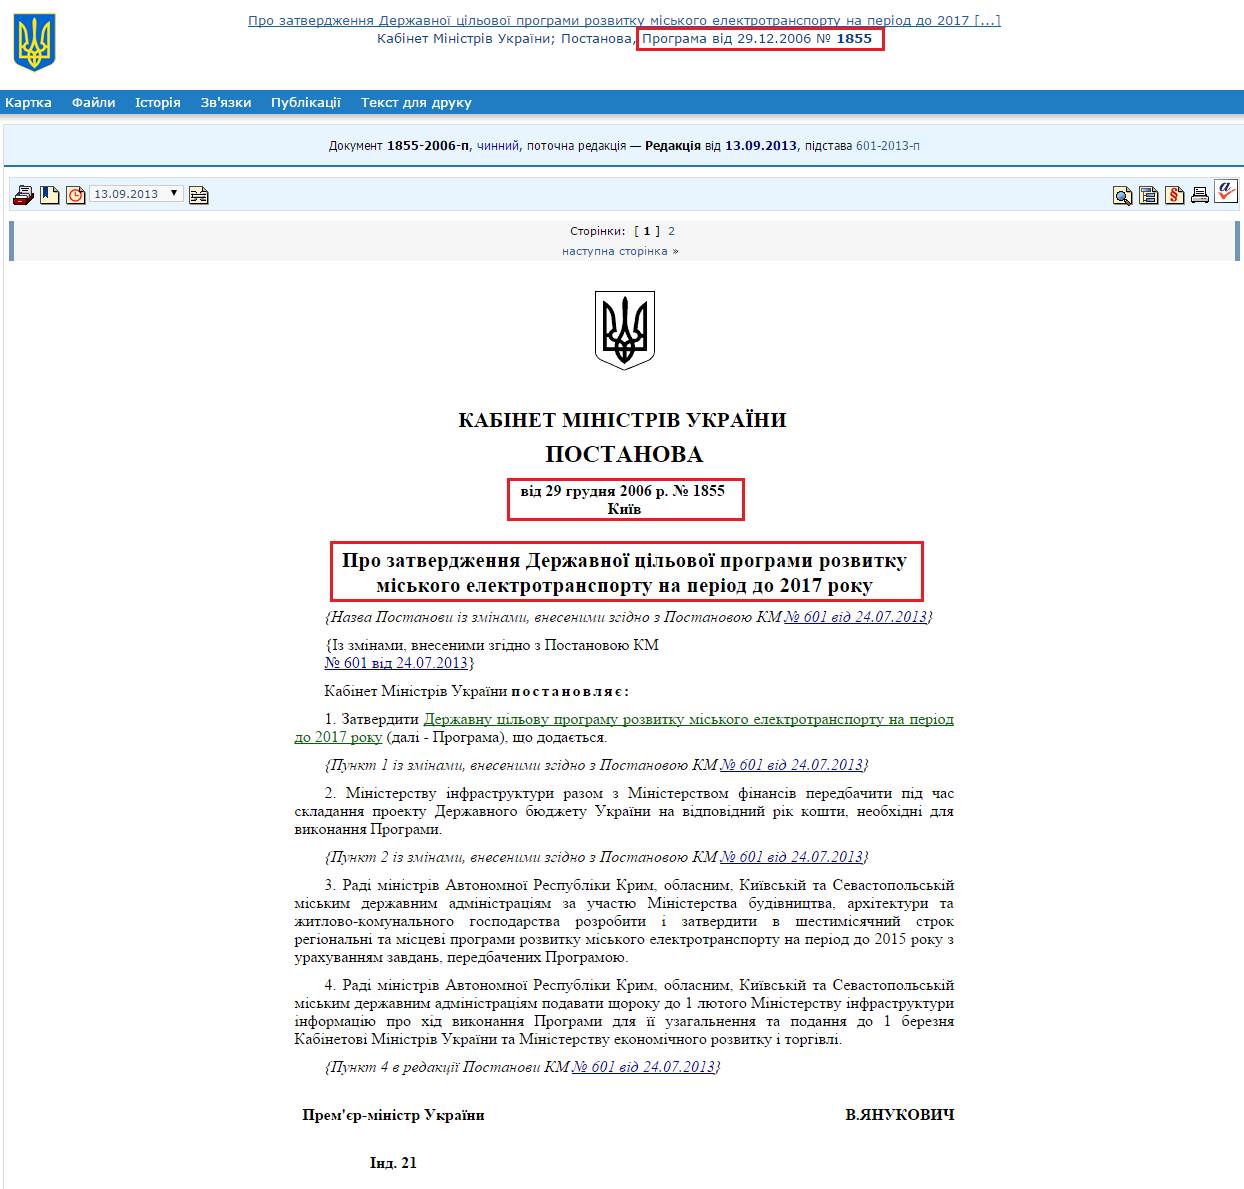 http://zakon1.rada.gov.ua/laws/show/1855-2006-%D0%BF